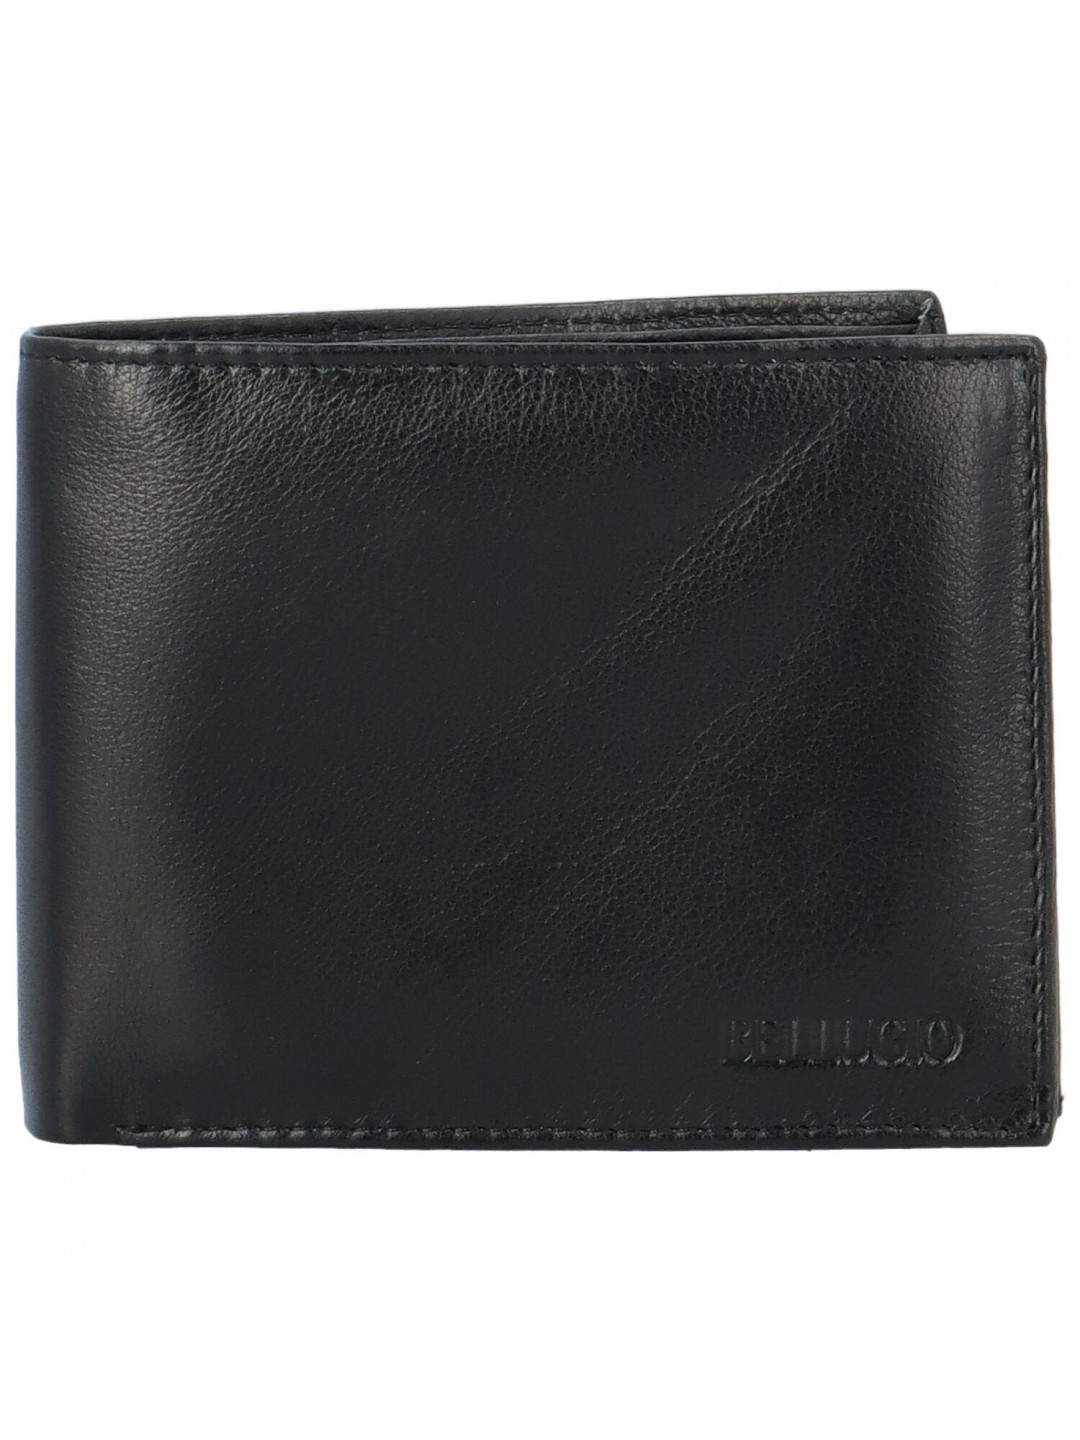 Pánská kožená peněženka černá – Bellugio Santian